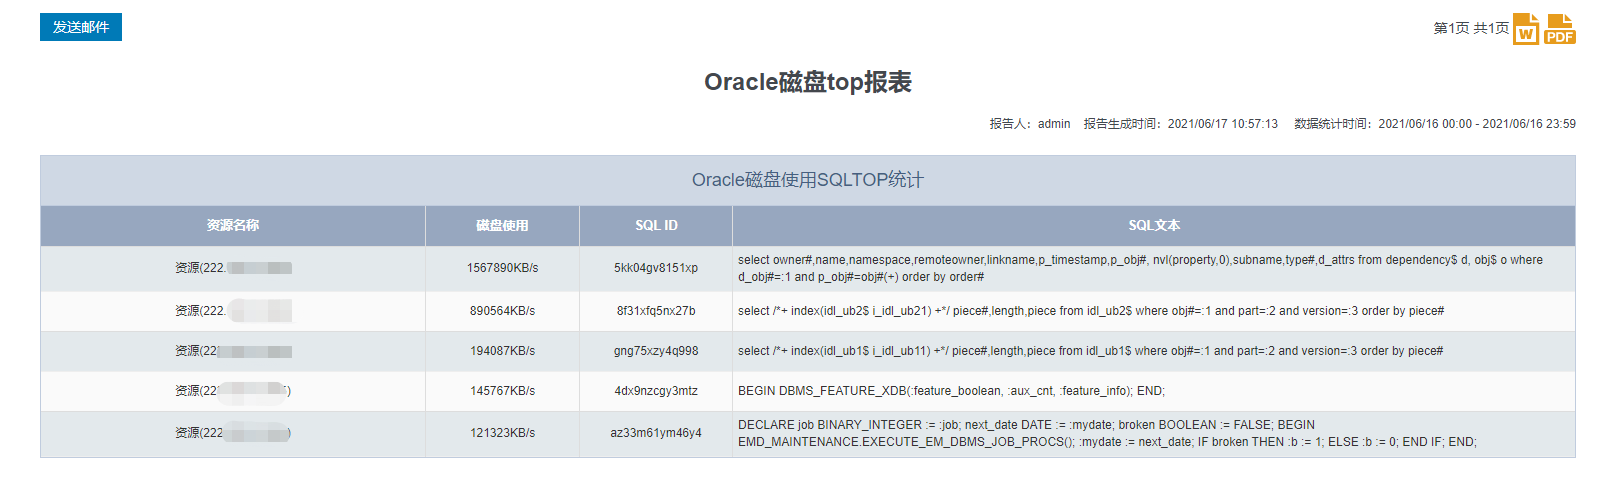 图表：ORACLE磁盘使用SQL TOP指标